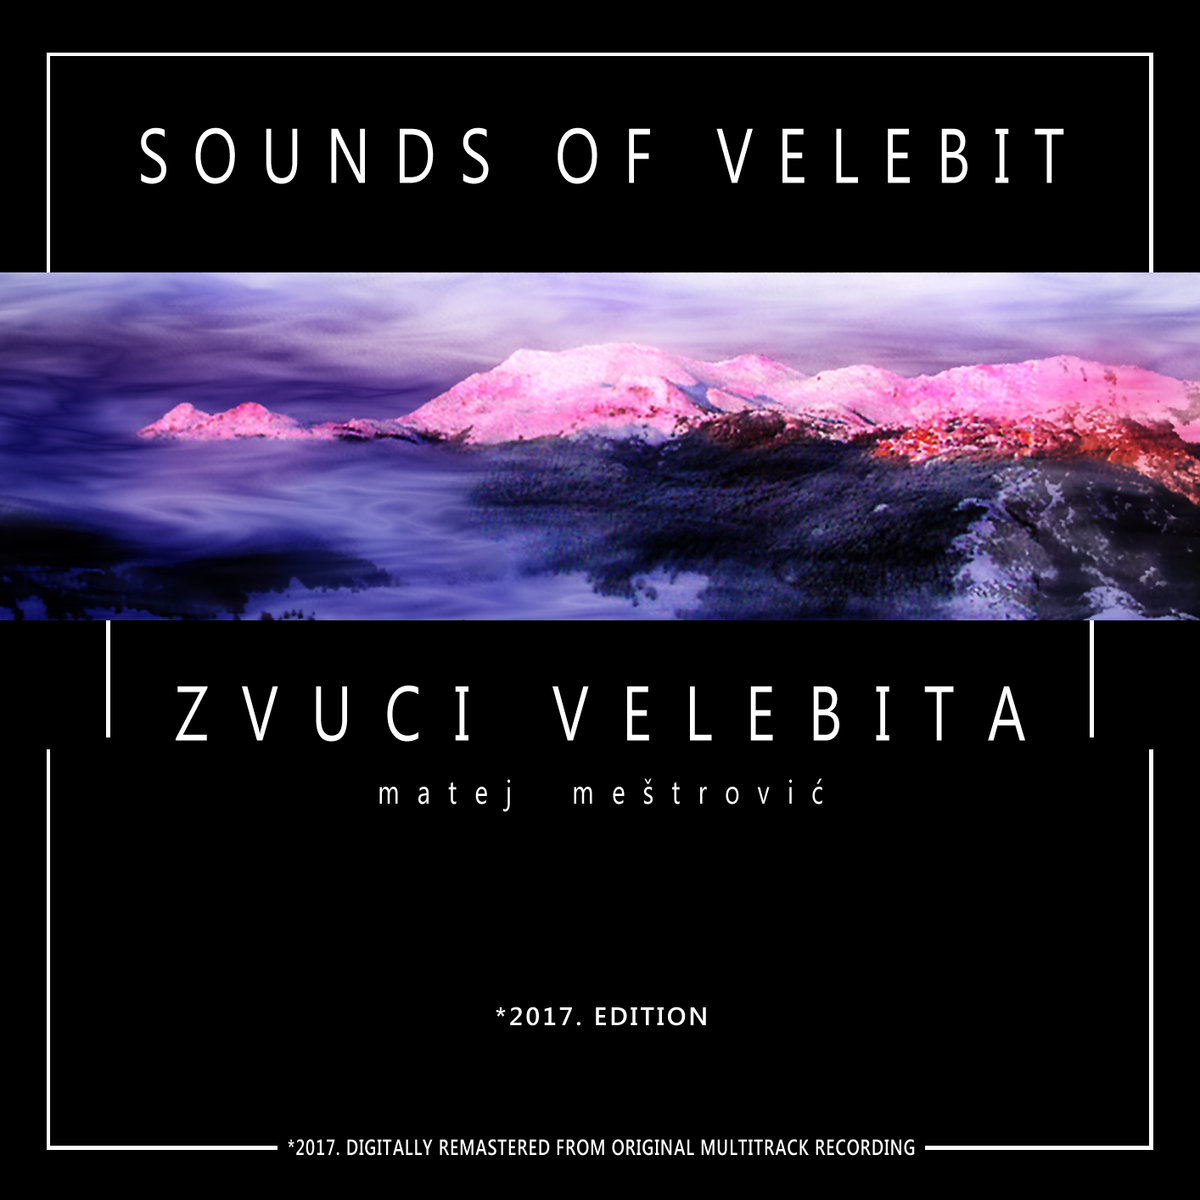 Sounds of Velebit